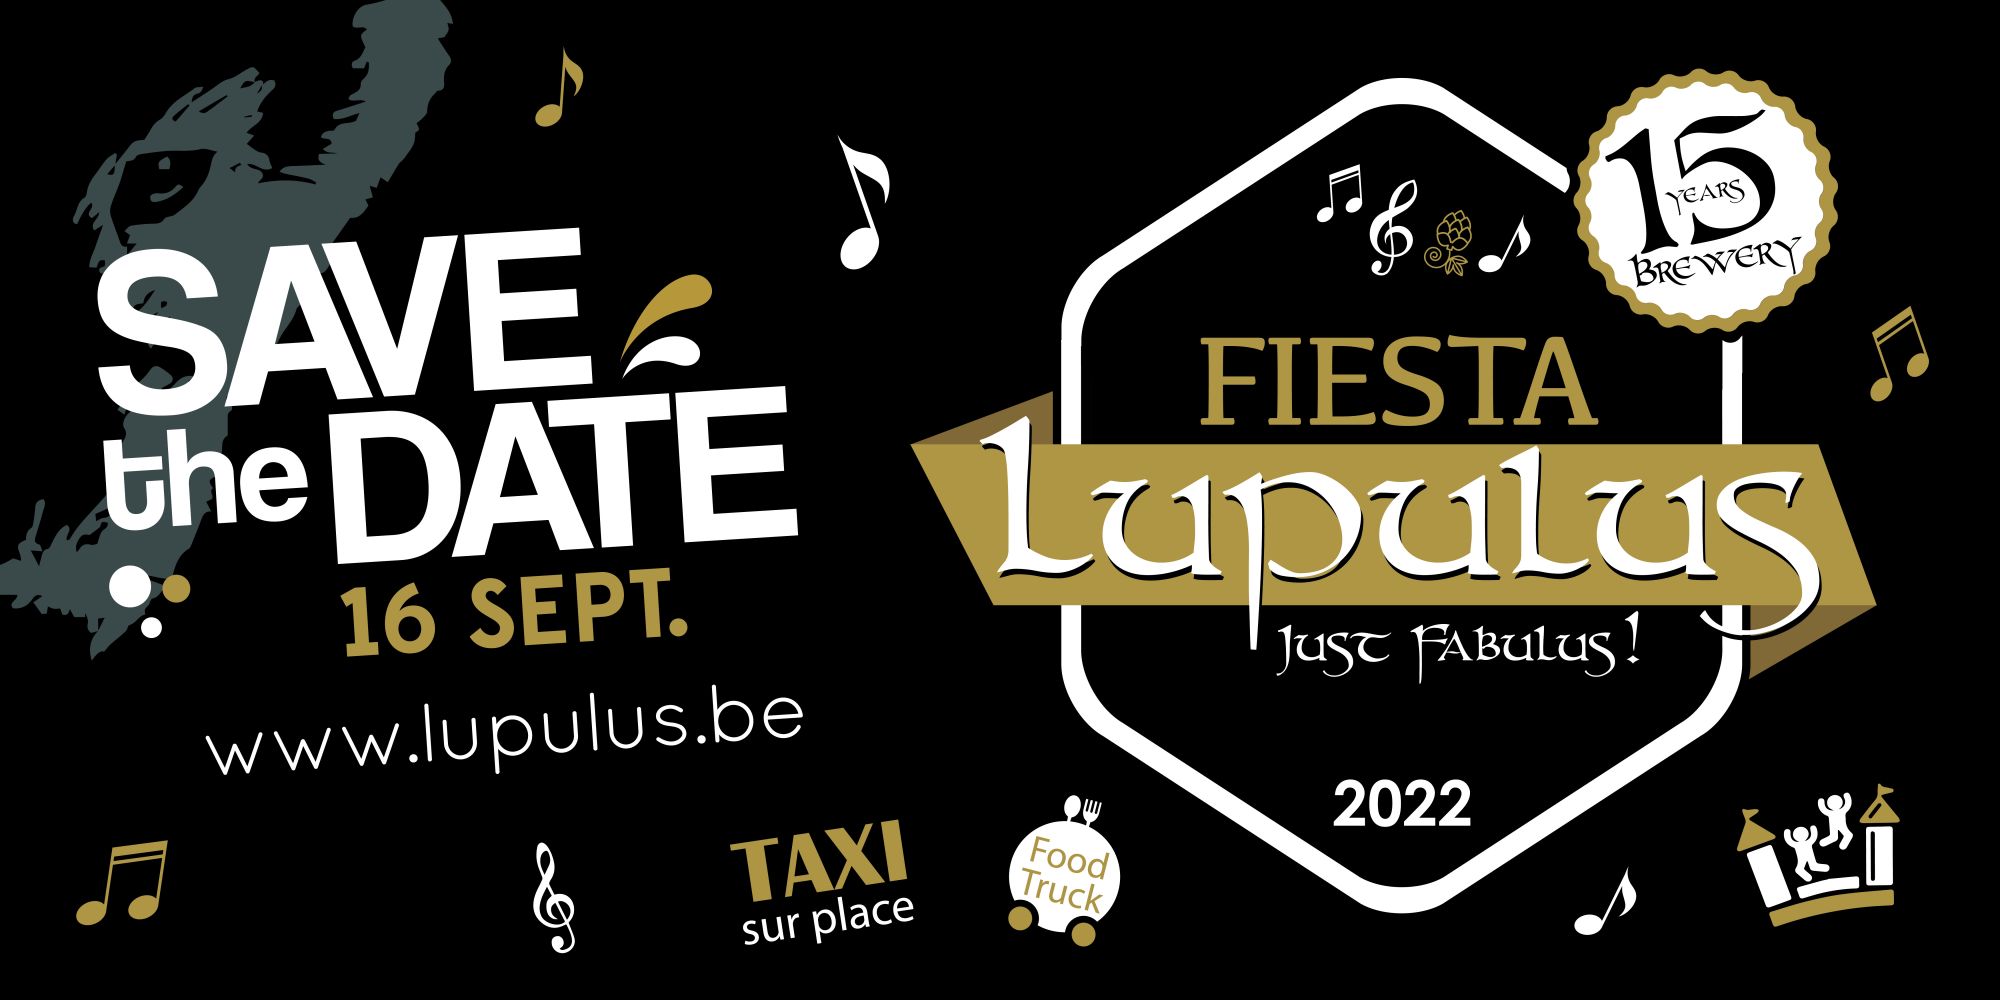  Fiesta Lupulus 15ans ! - Lupulus